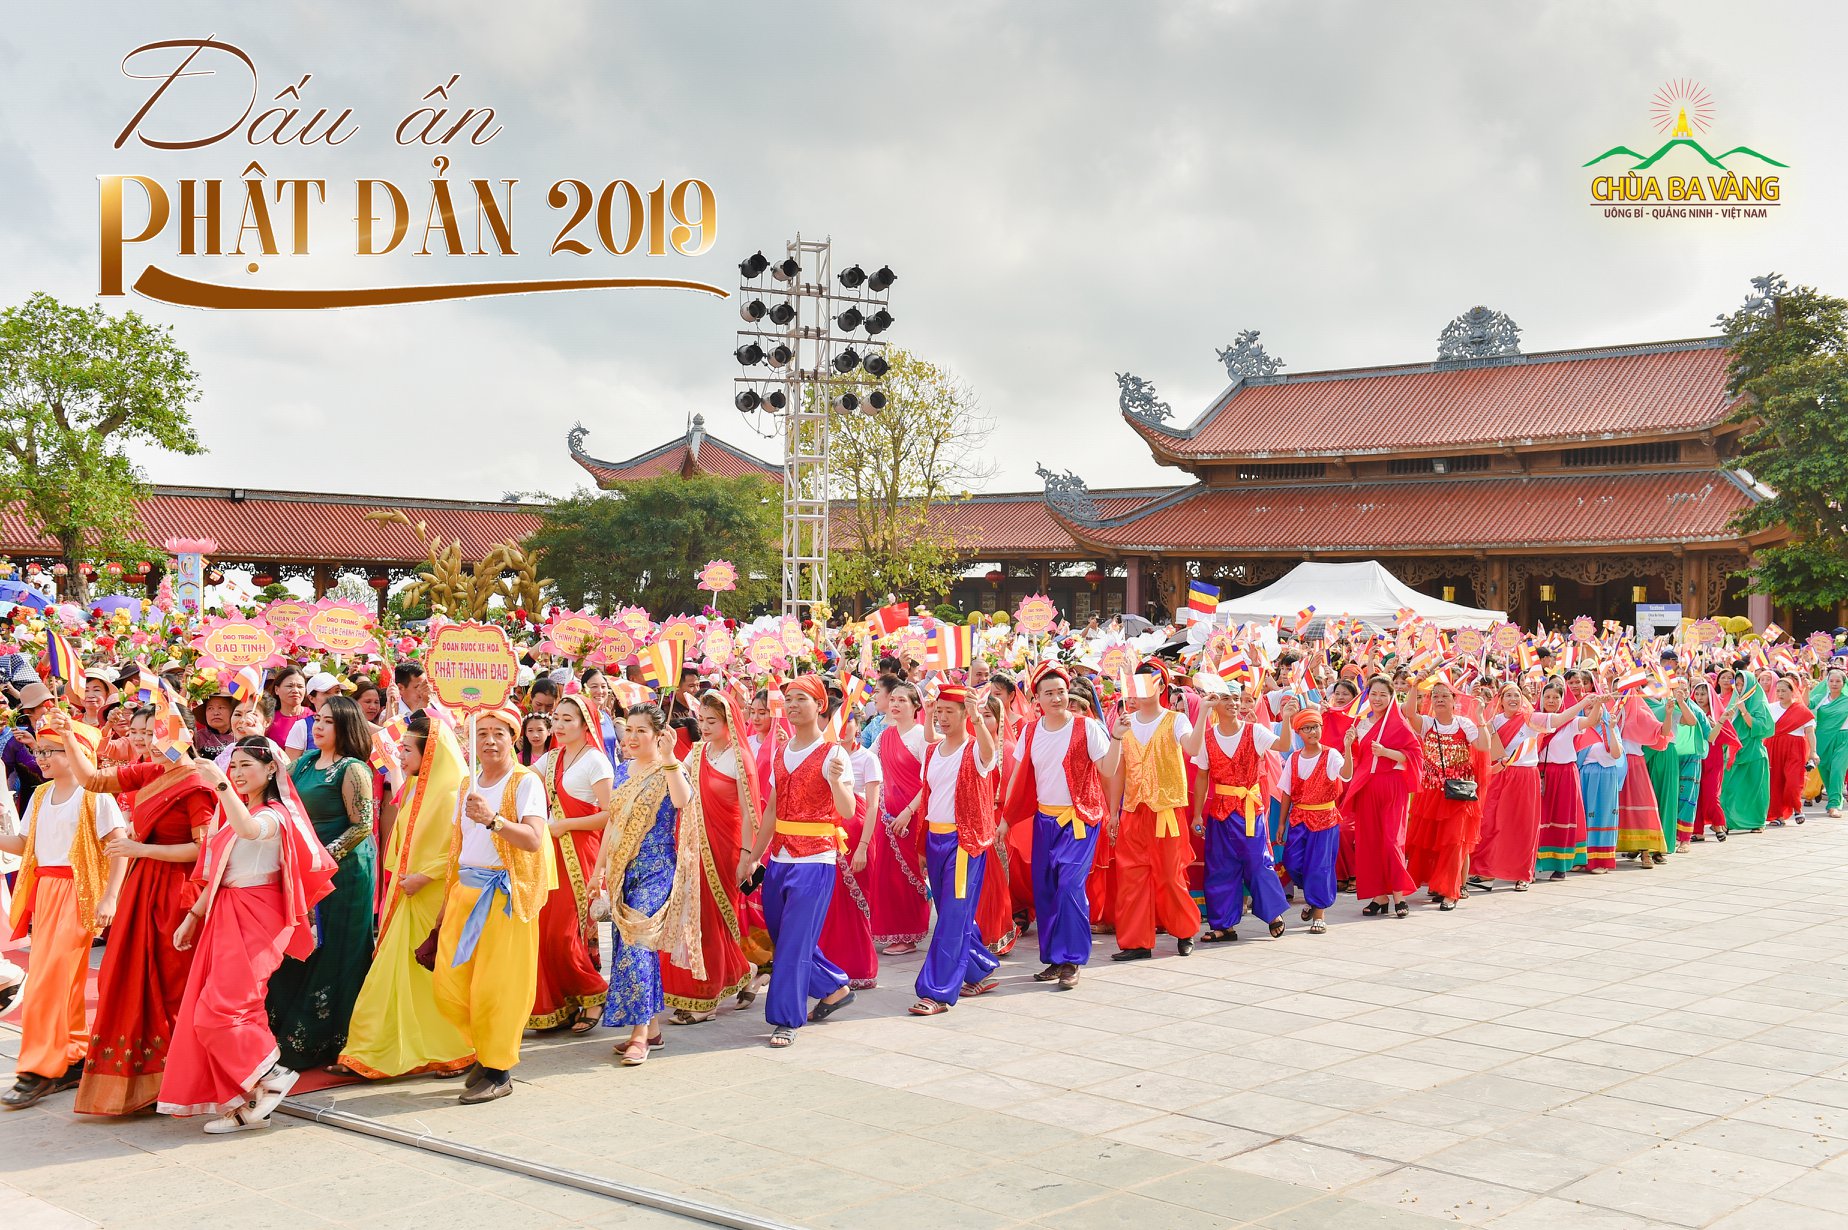 Các Phật tử hân hoan, hạnh phúc trong lễ kỷ niệm ngày Đức Phật đản sinh năm 2019 được tổ chức tại chùa Ba Vàng